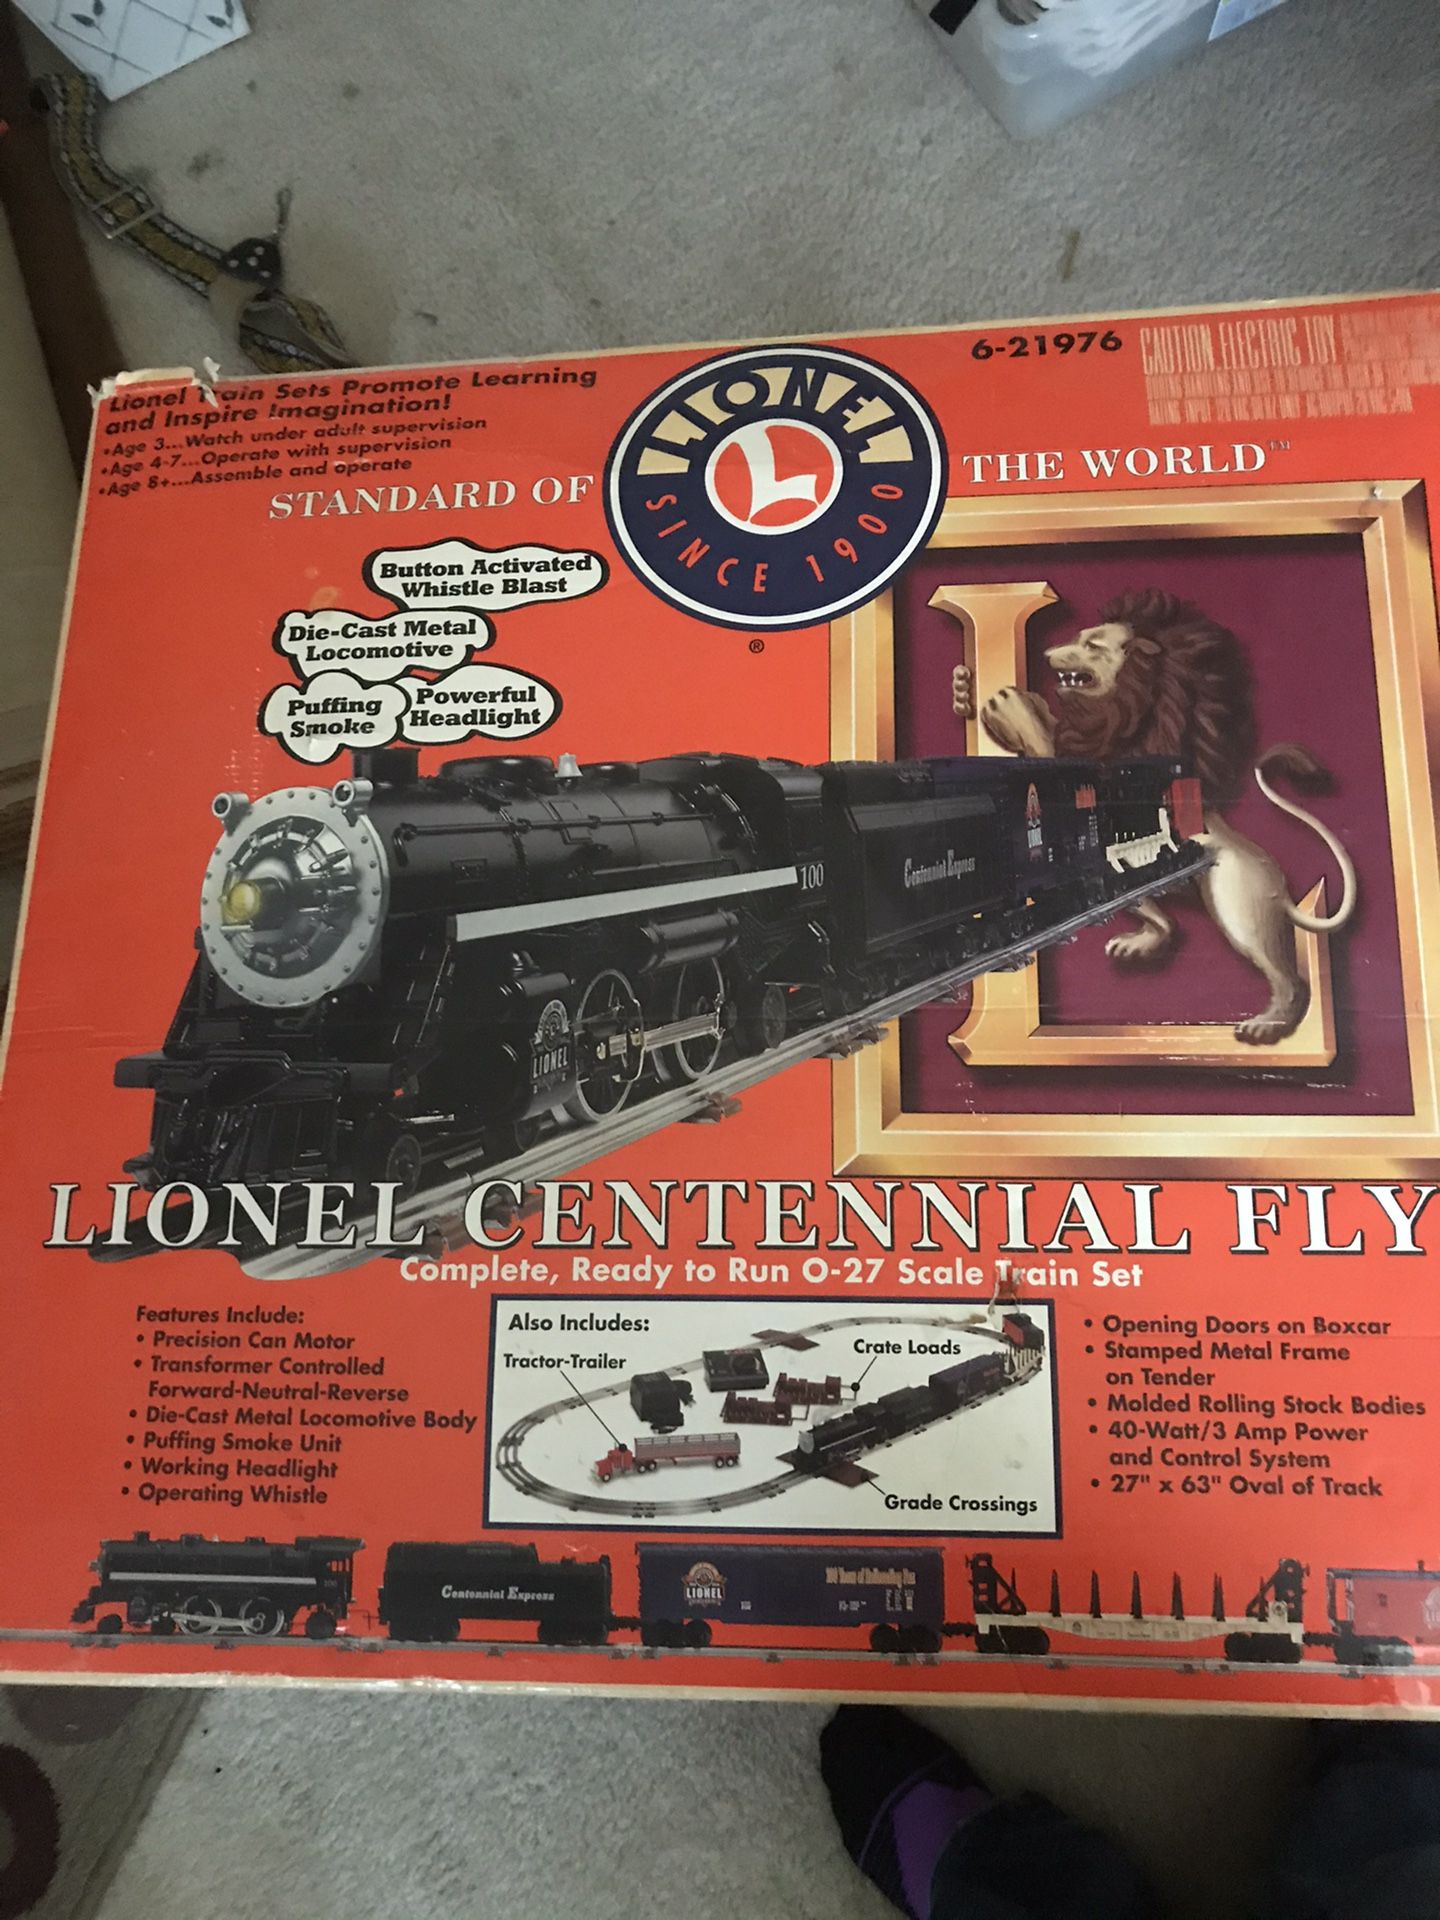 Lionel Centennial flyer